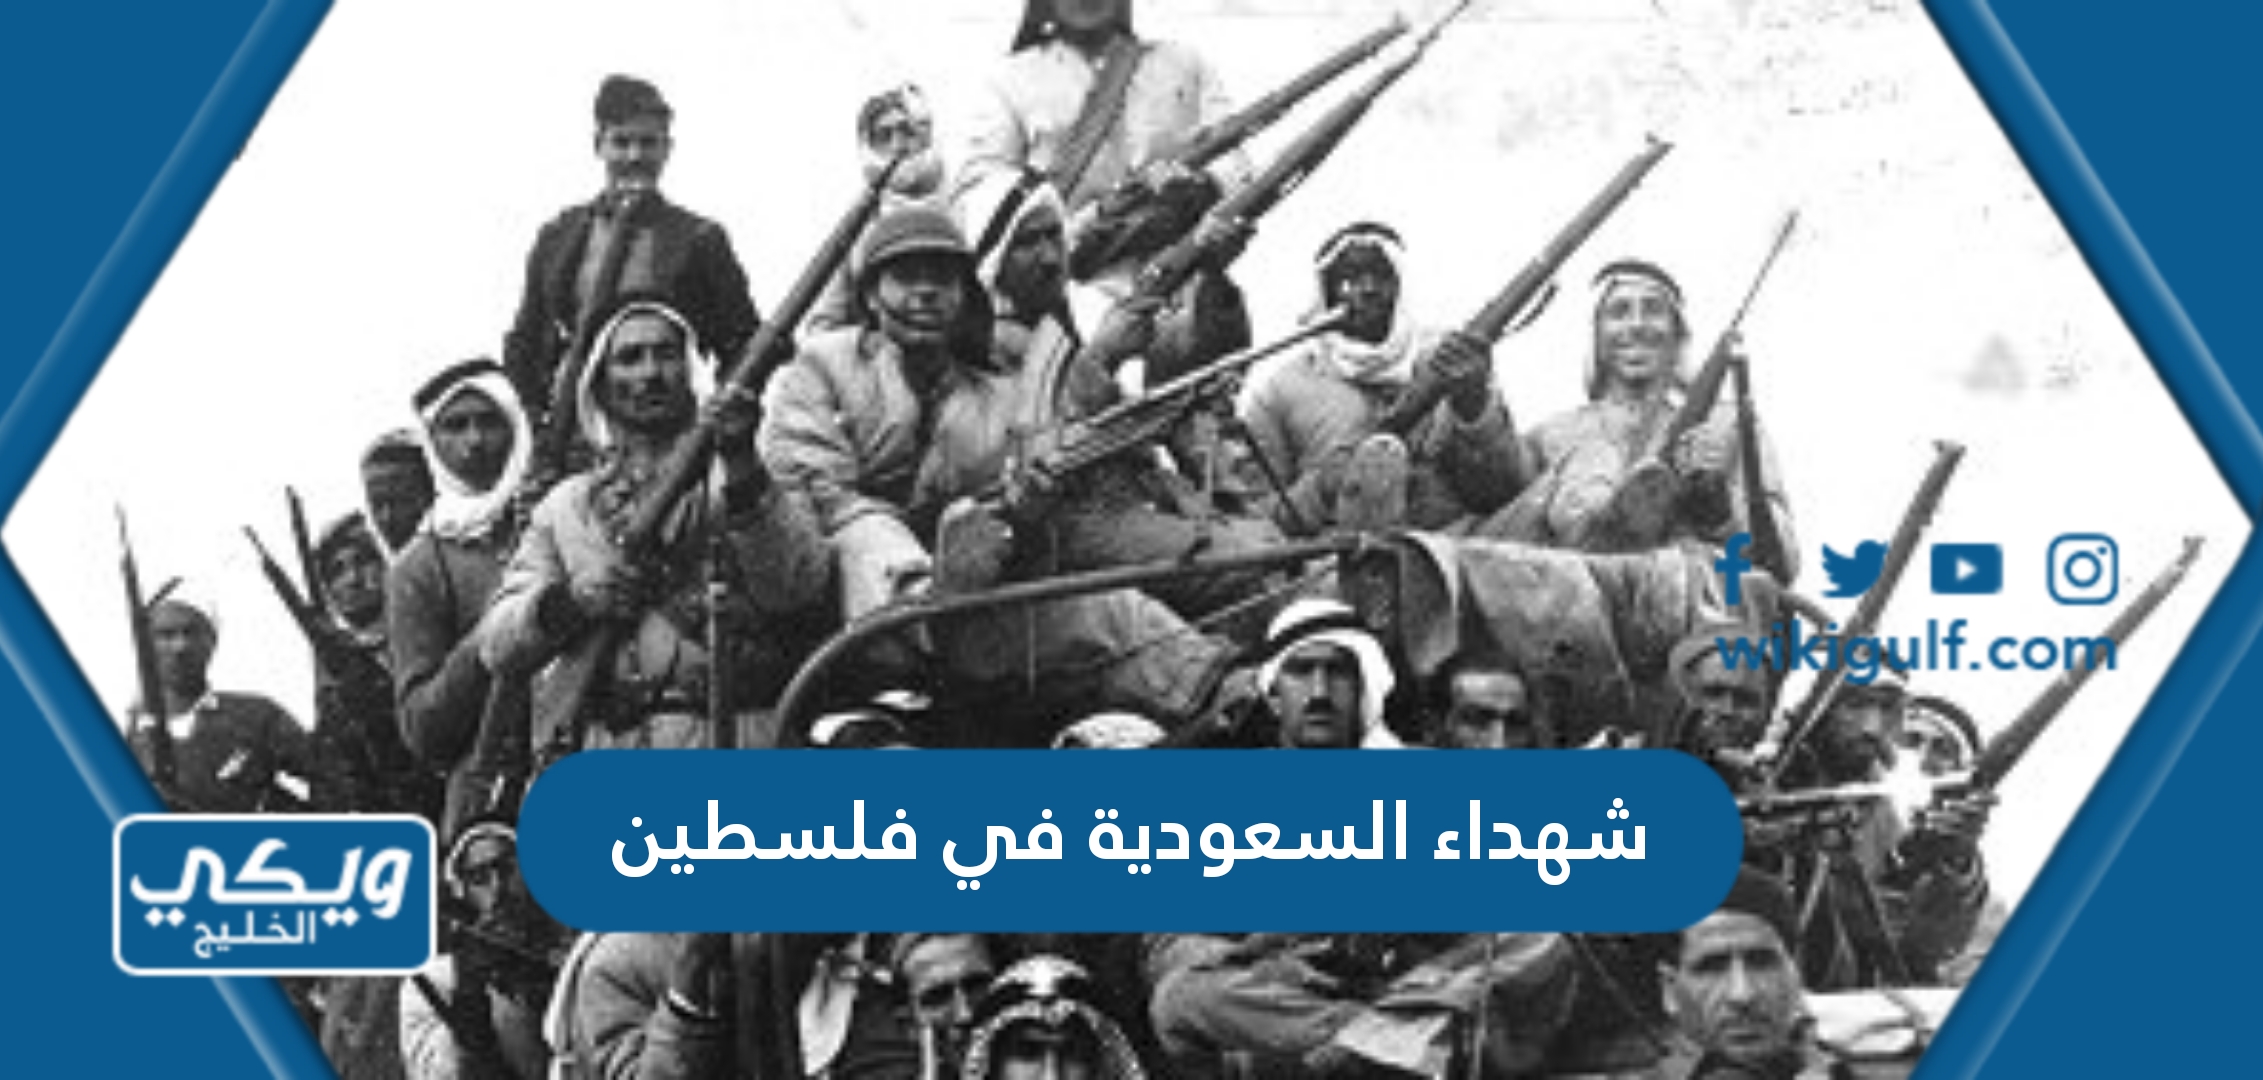 أسماء شهداء السعودية في فلسطين في حرب 1948